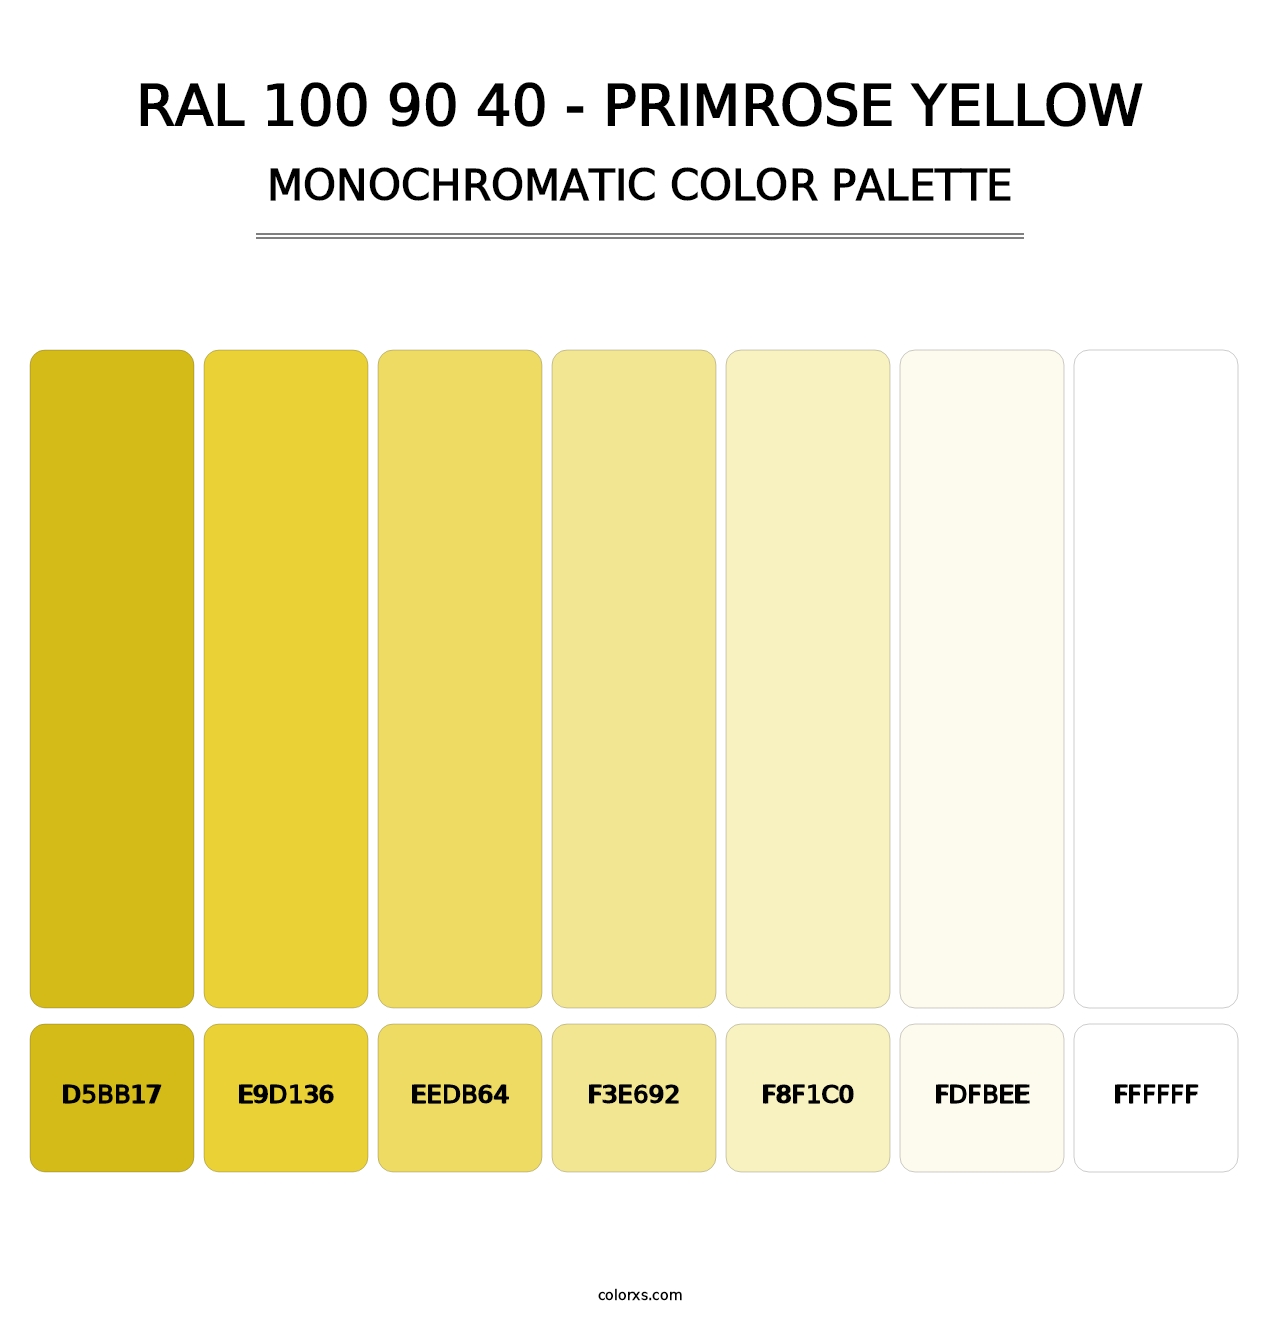 RAL 100 90 40 - Primrose Yellow - Monochromatic Color Palette